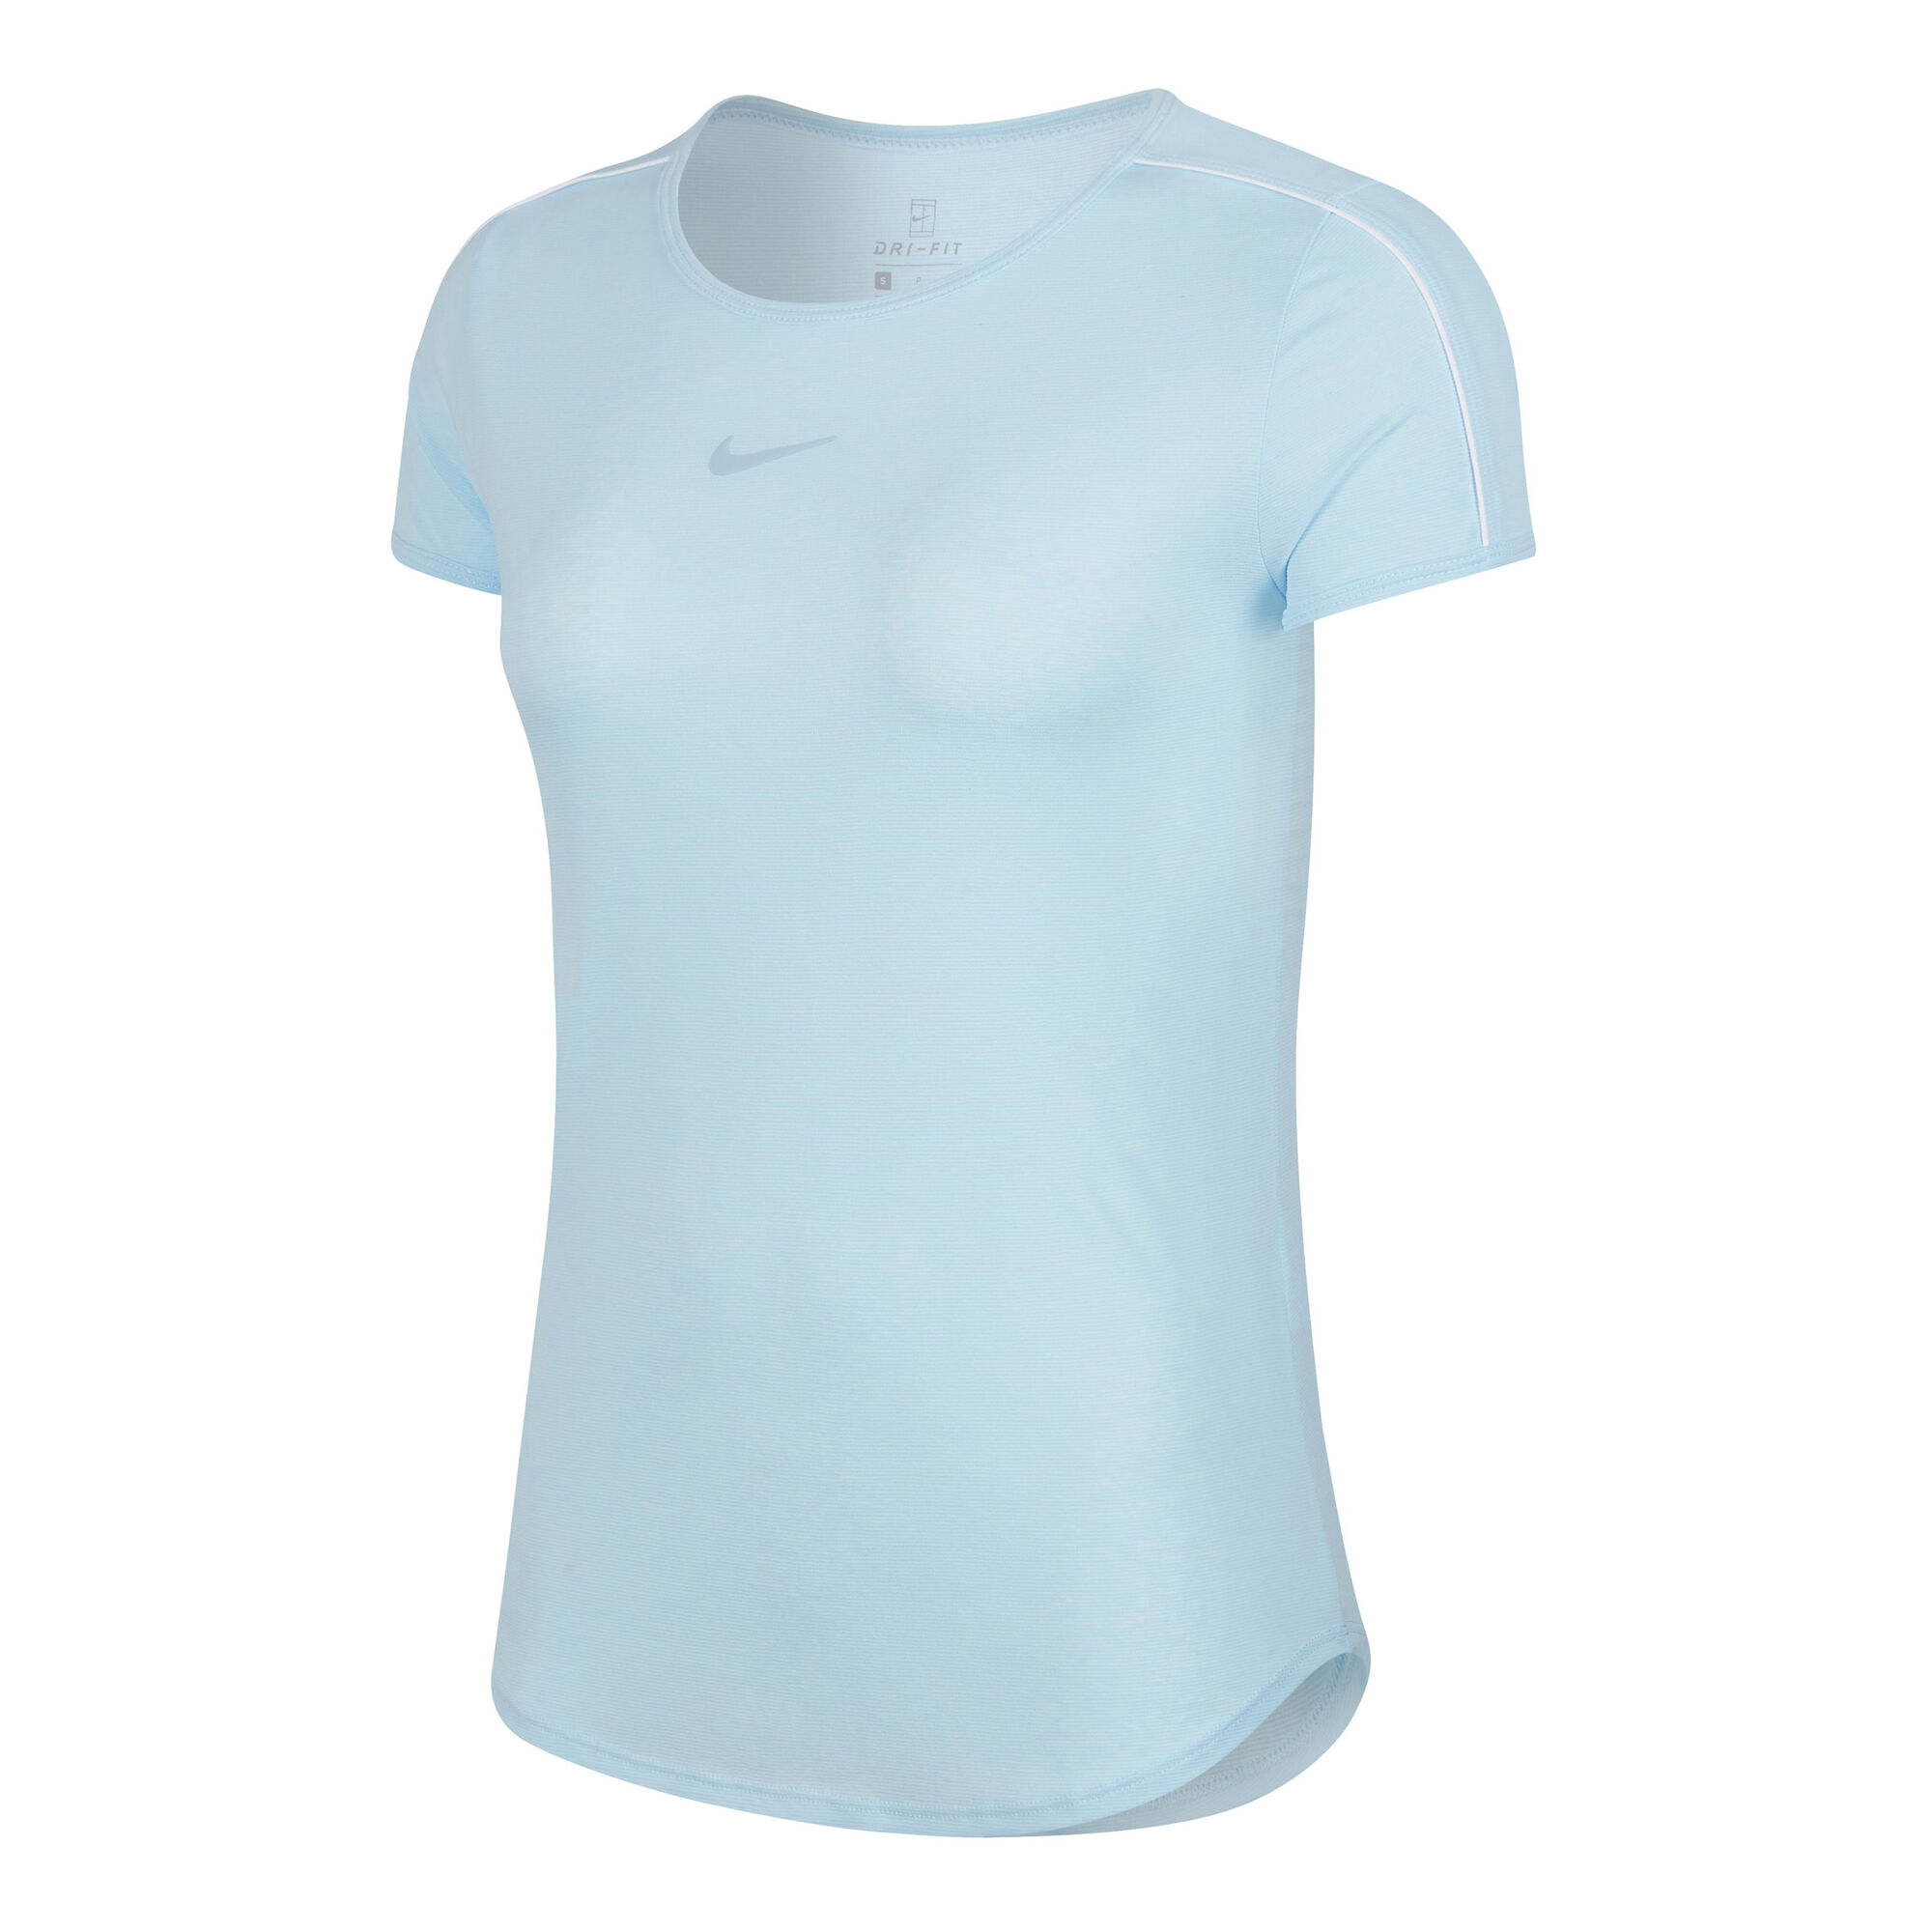 buy Nike Court Dry T-Shirt Women - Light Blue, White online | Tennis-Point